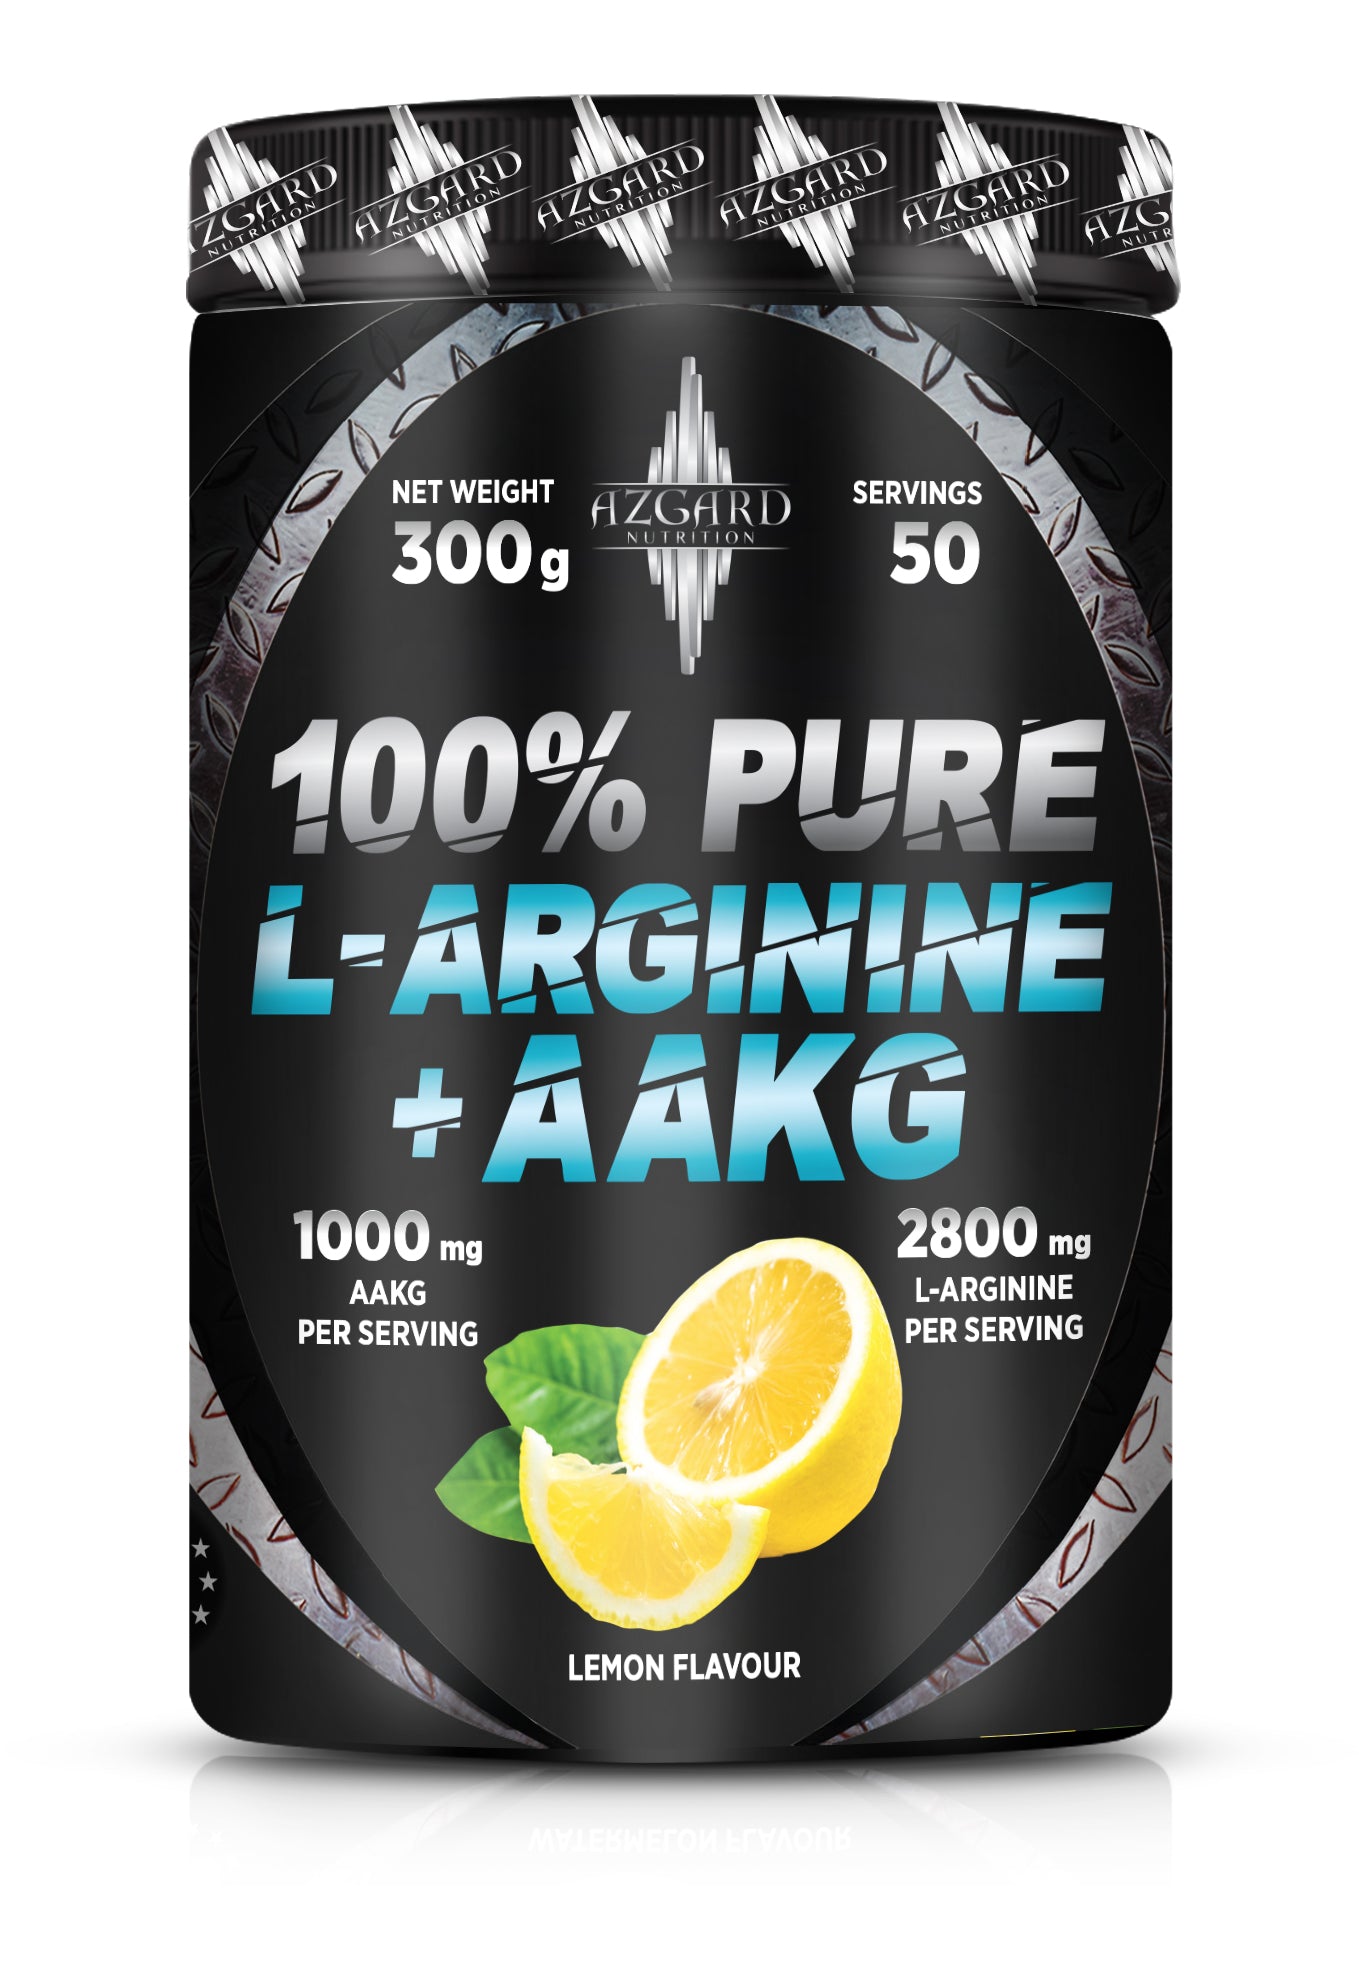 100% Pure L Arginine + AAKG Lemon